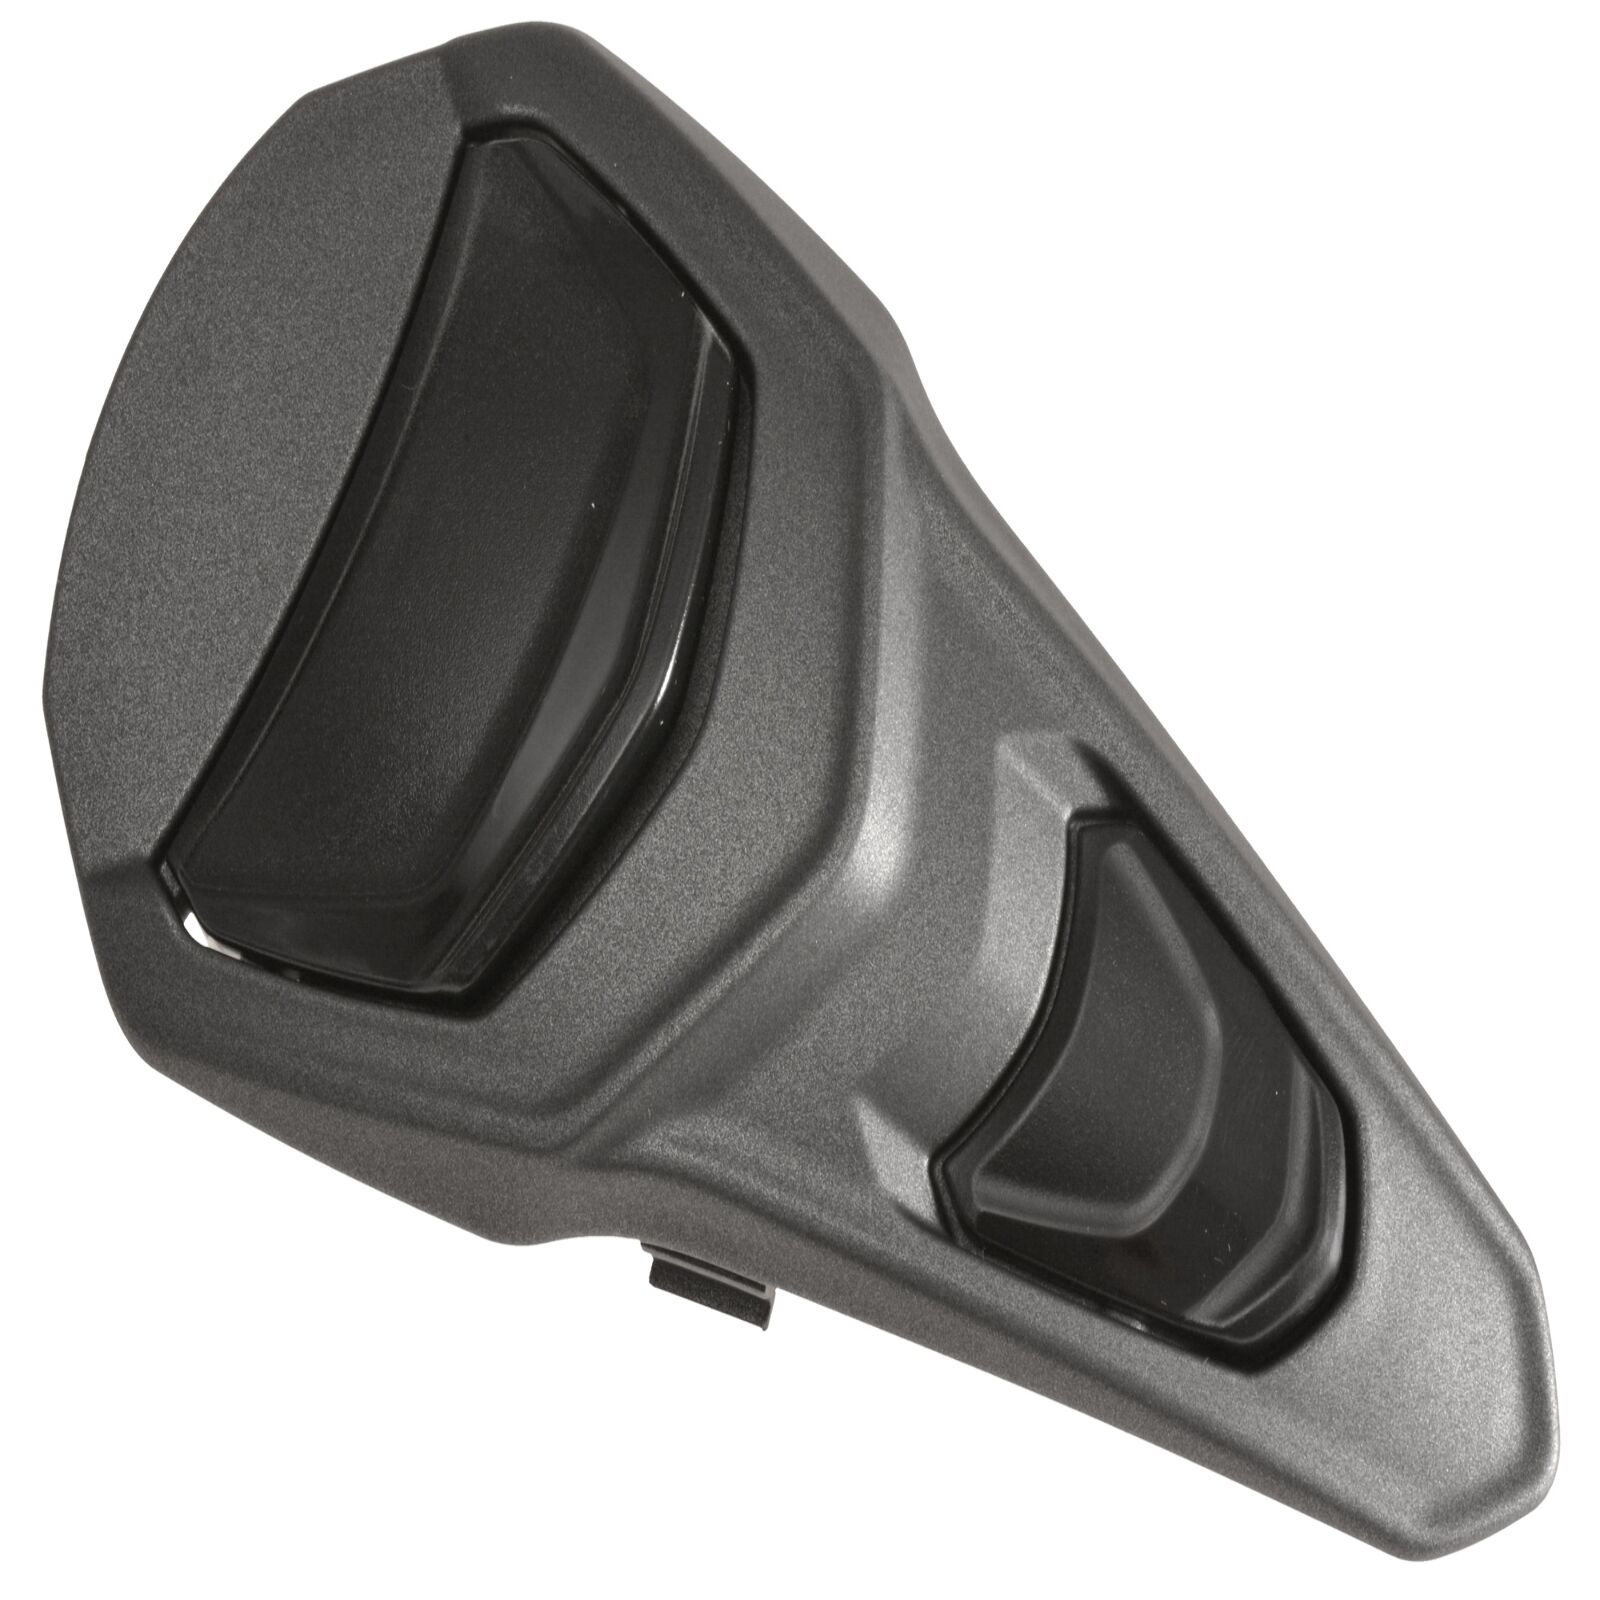 Obrázek produktu vrchní kryt ventilace pro přilby RIDES, AIROH (černý/bílý) 6550